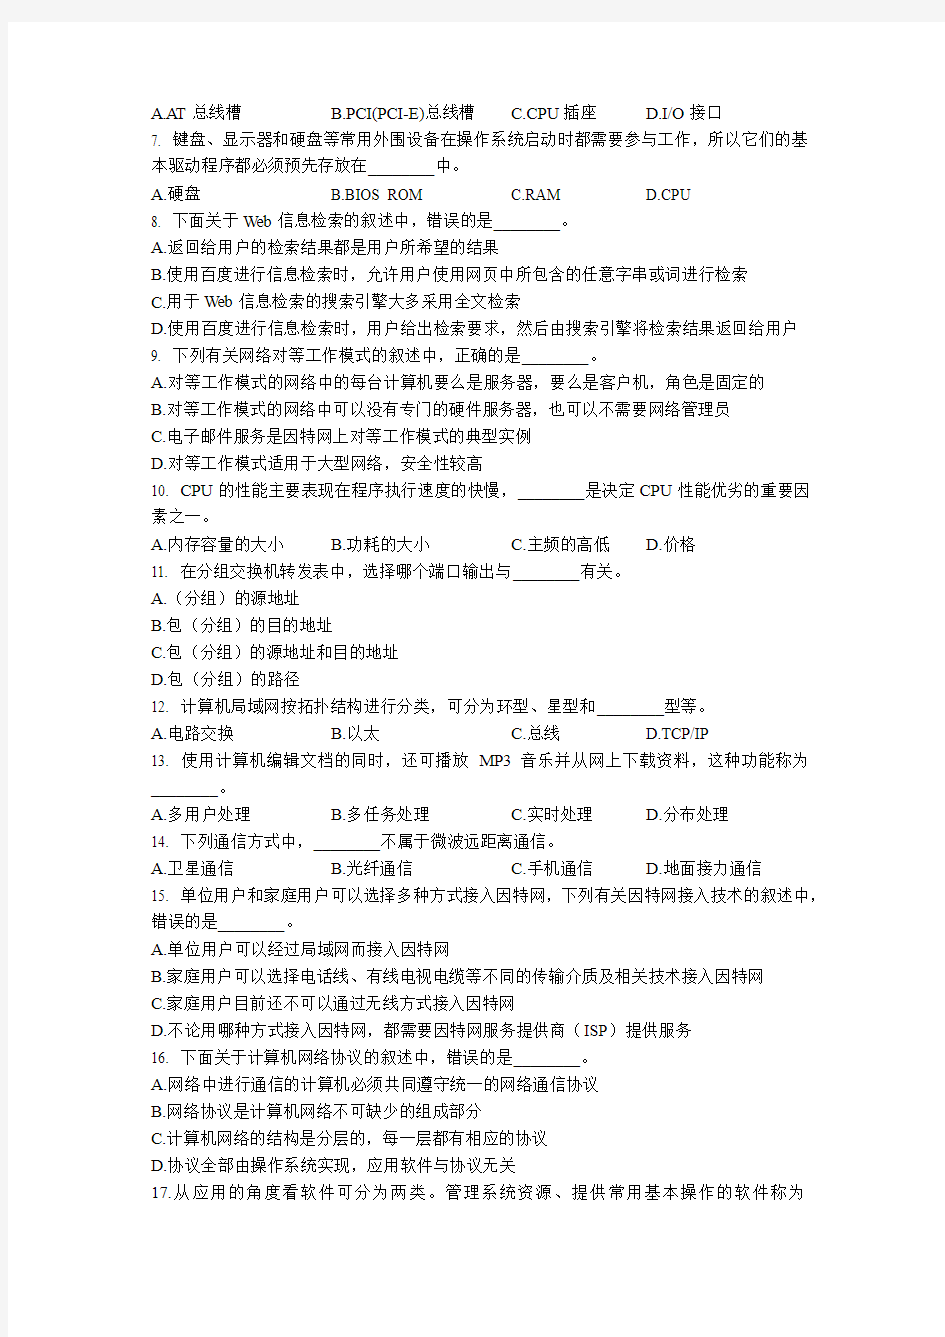 2014年10月江苏省计算机等级考试全真试题8